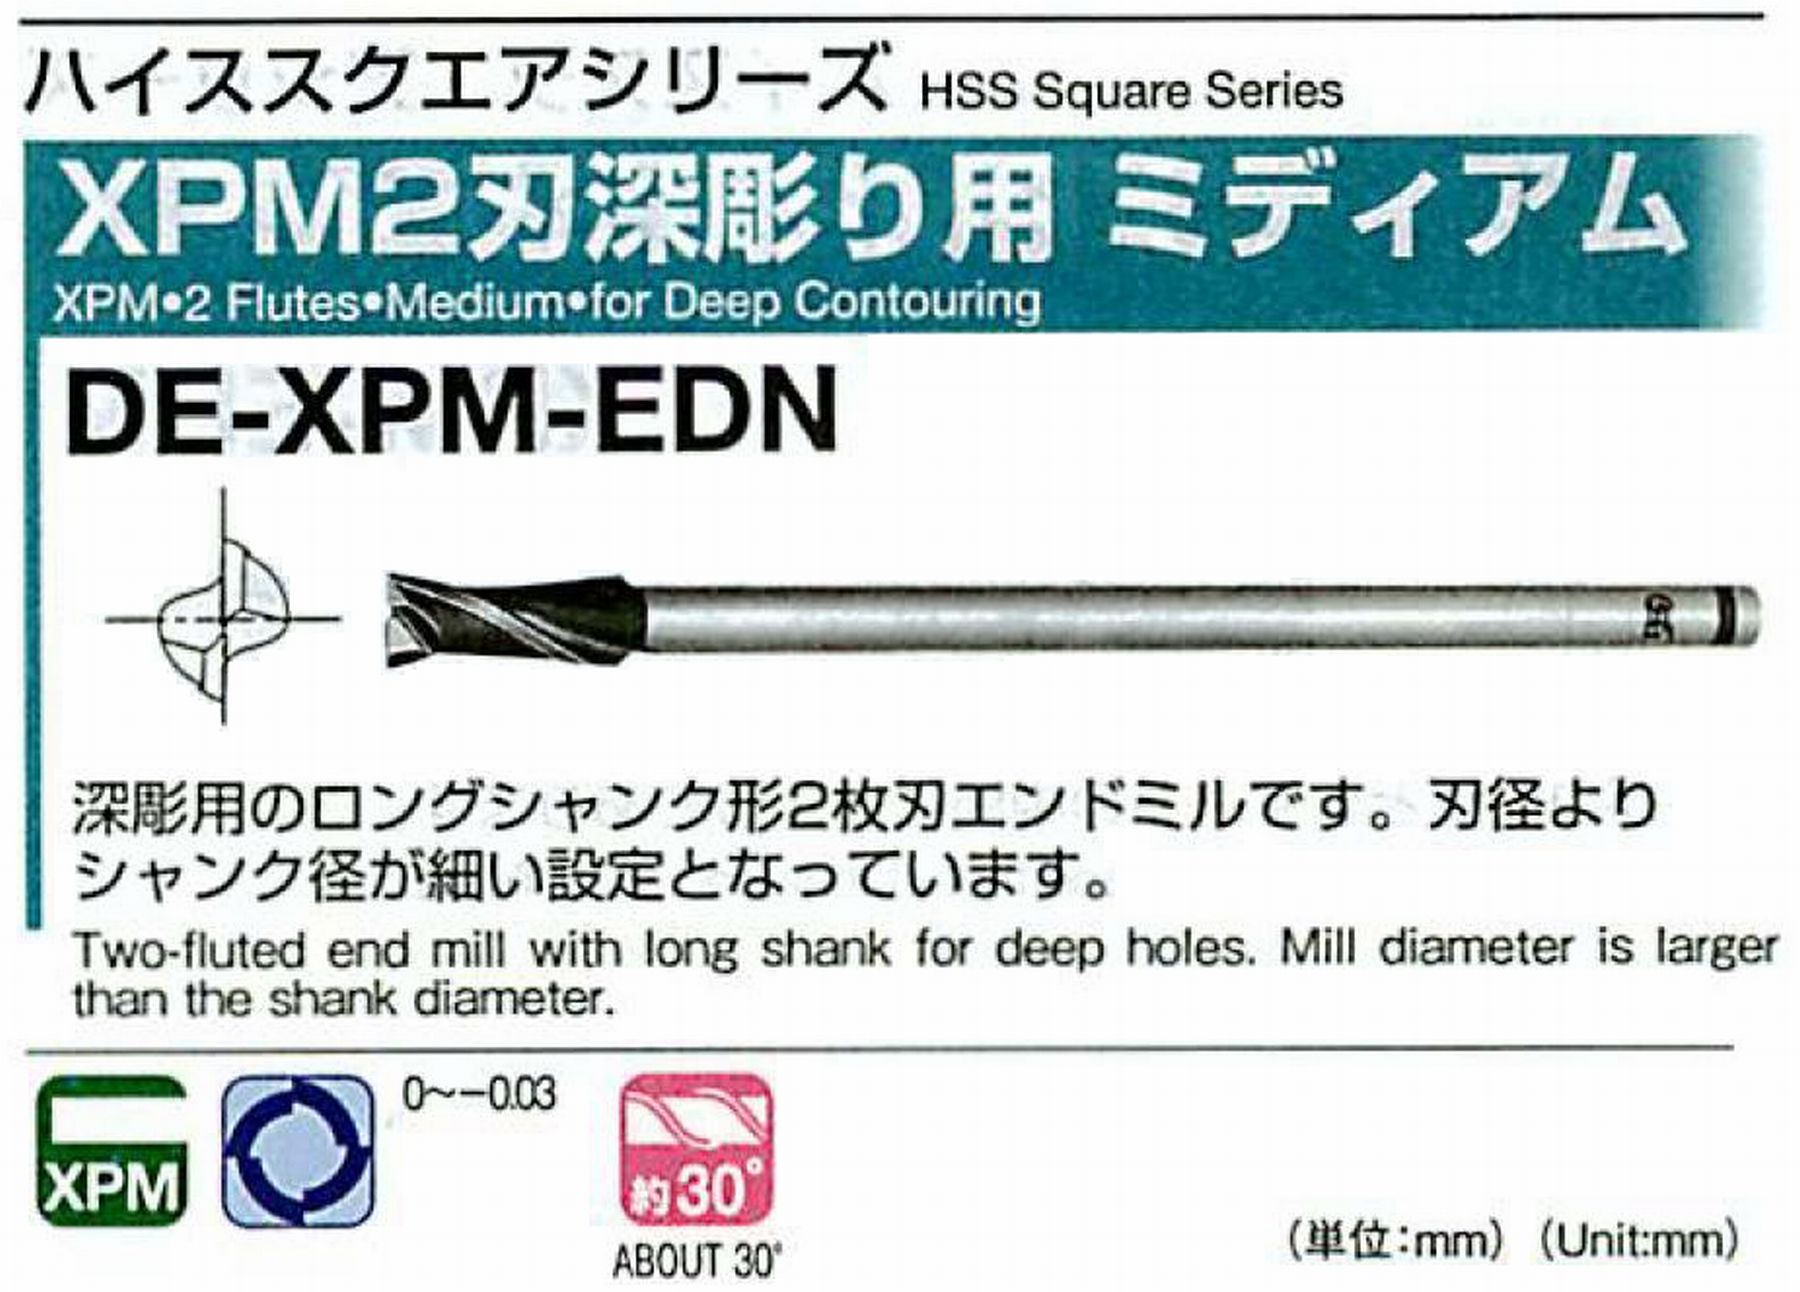 オーエスジー/OSG XPM2刃深彫り用 ミディアム DE-XPM-EDN 外径18 全長180 刃長40 シャンク径16mm